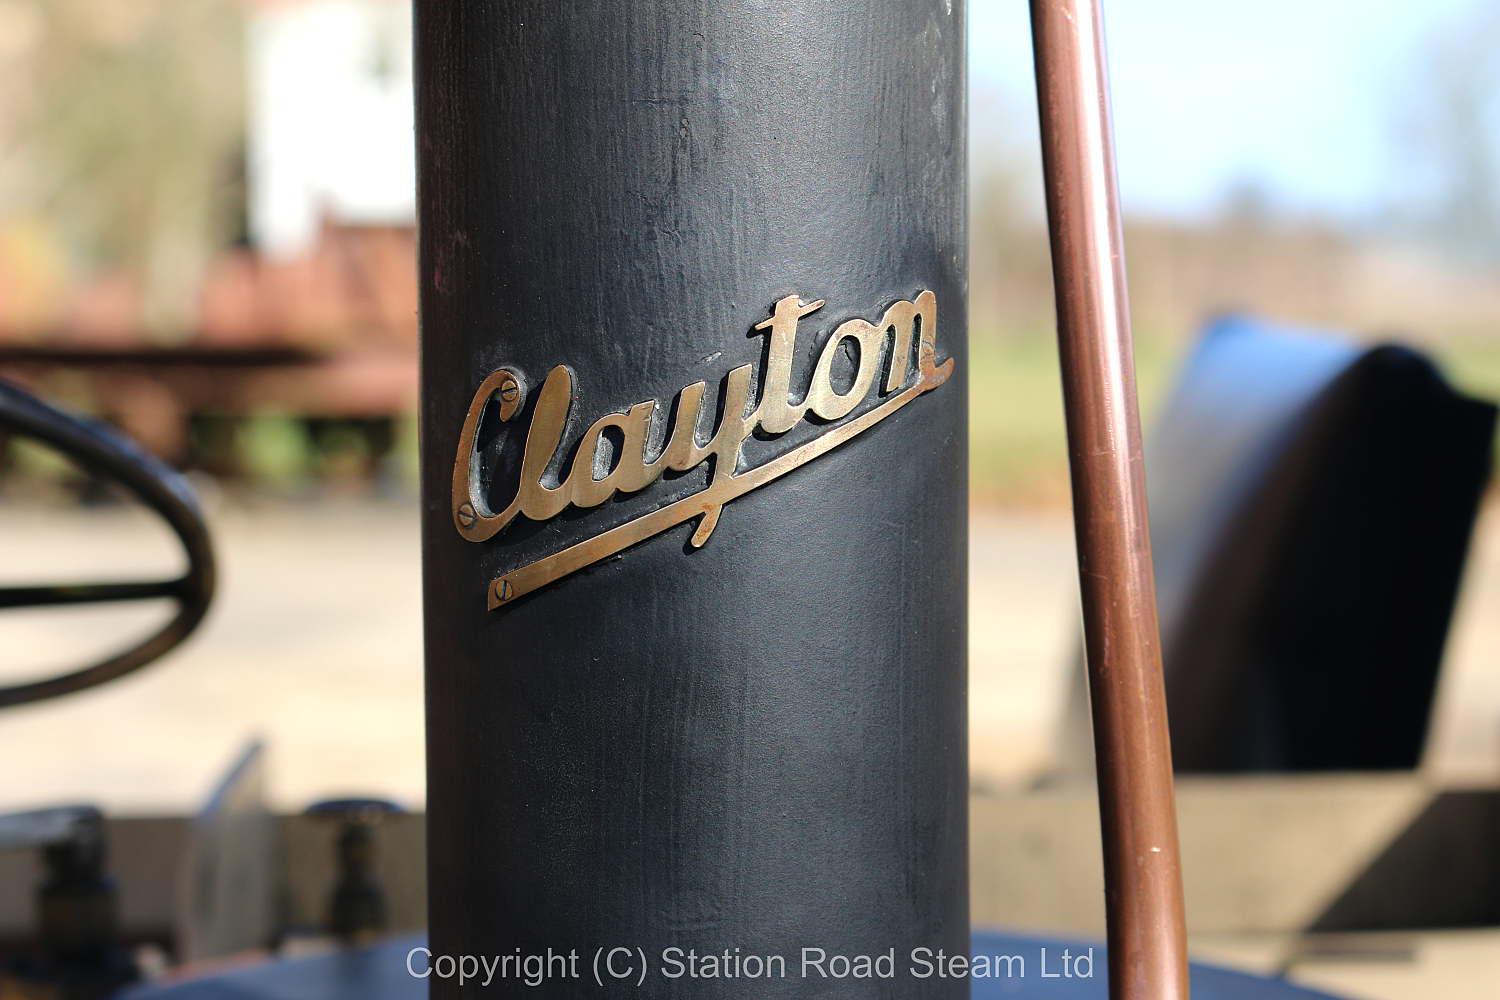 4 inch scale Clayton wagon